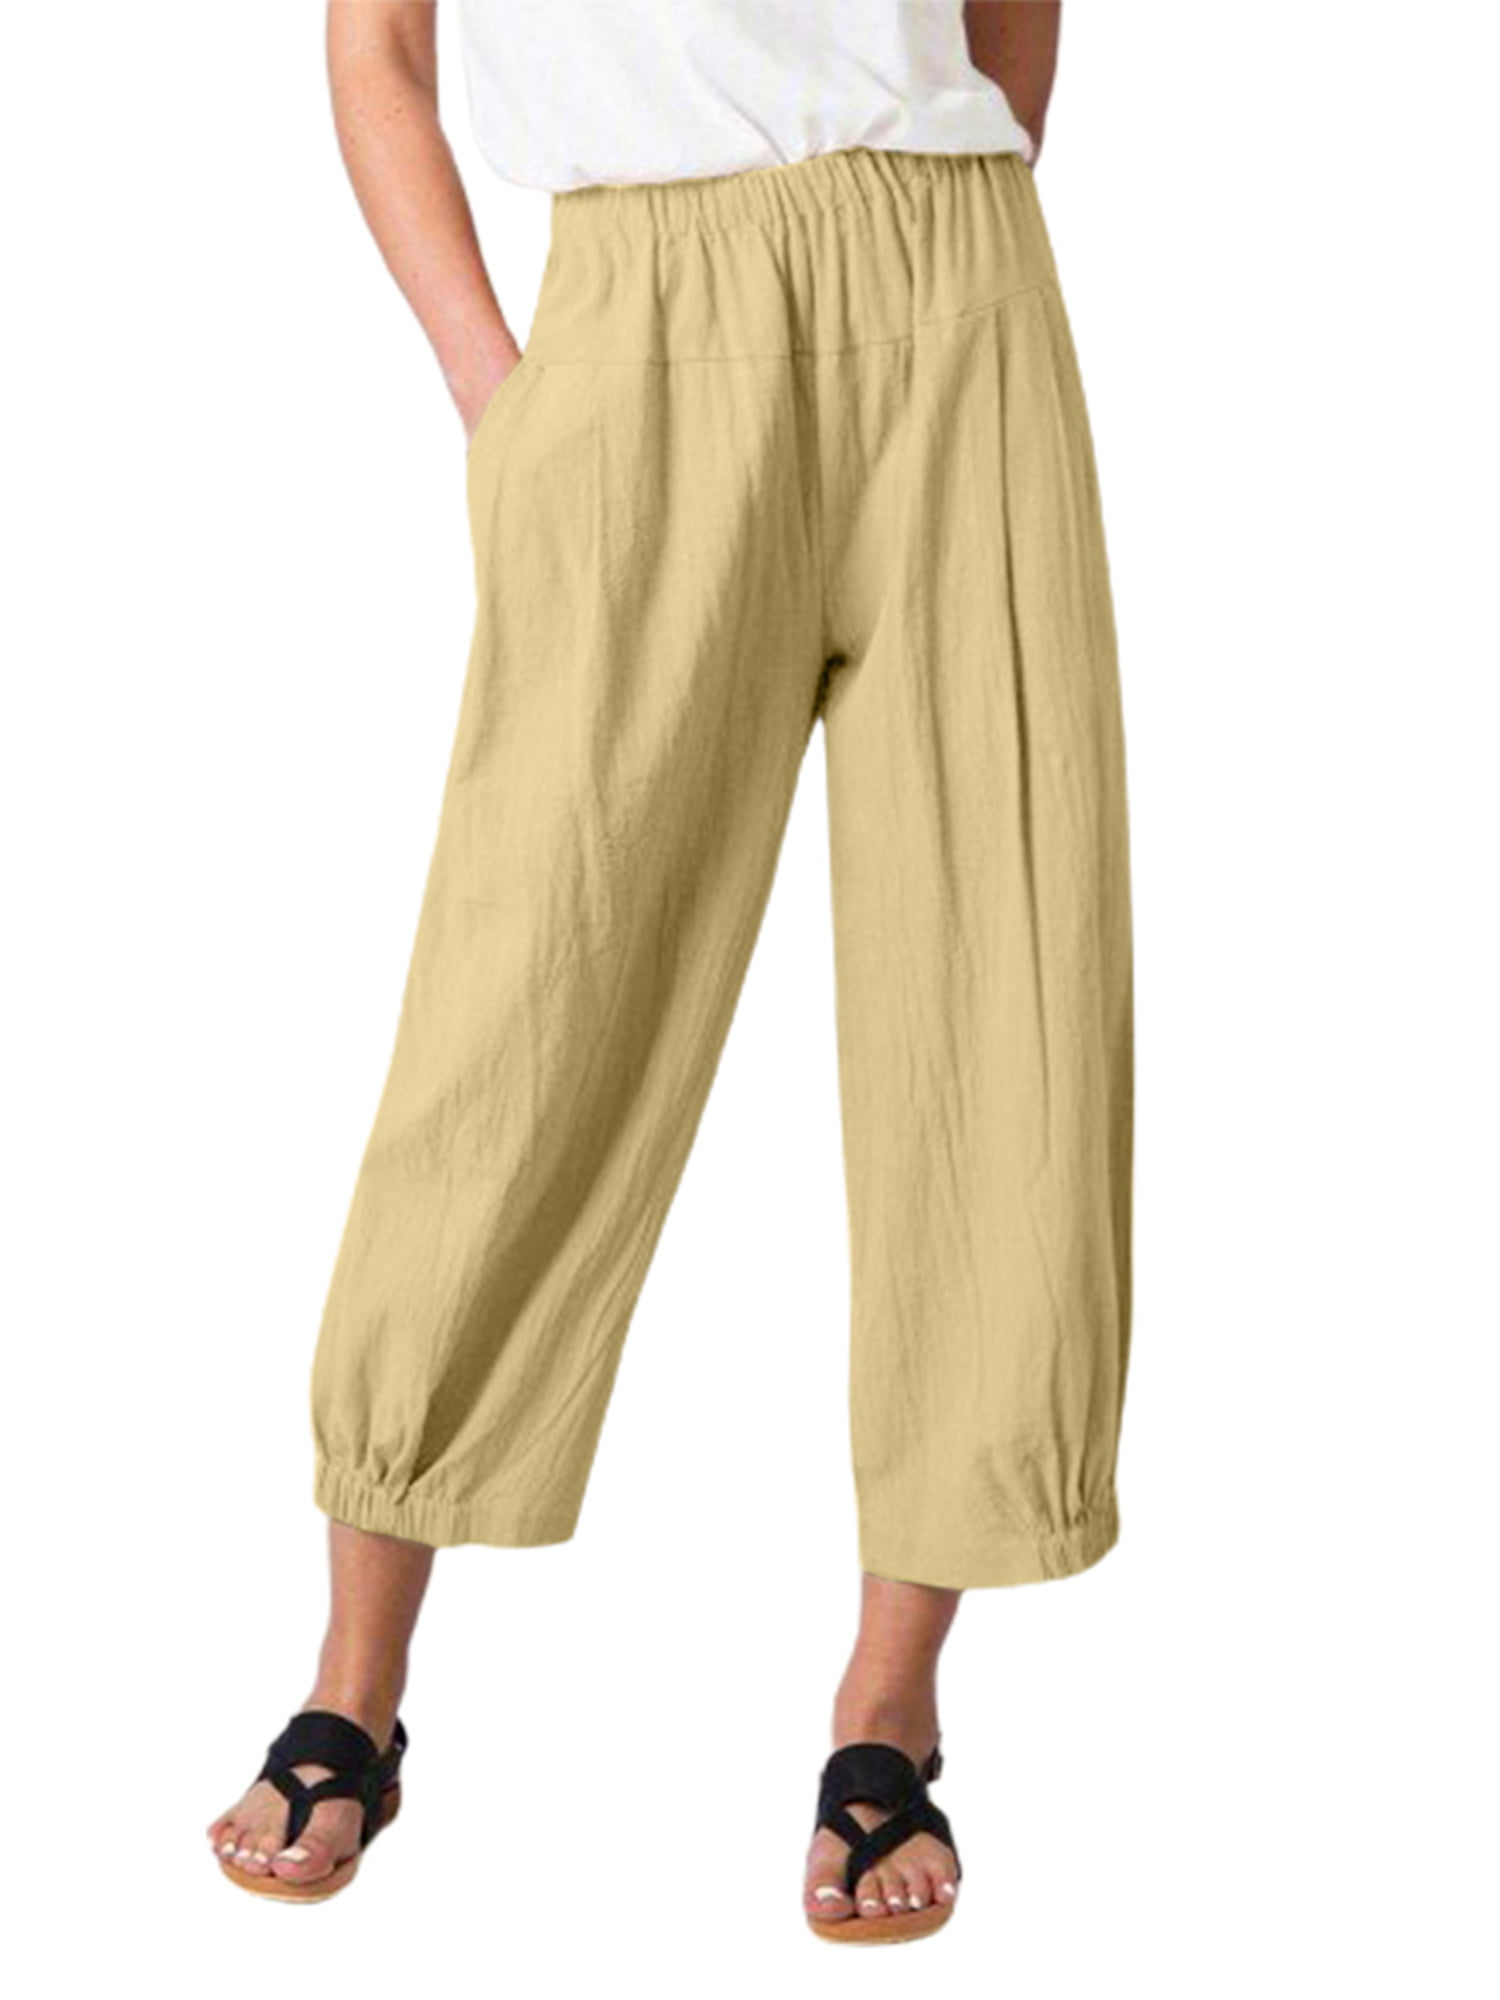 Linen Pants For Women Casual Summer Plain Elastic Waist Wide Leg Capris Crop Plus Size Cotton With Pockets Beach Trousers 